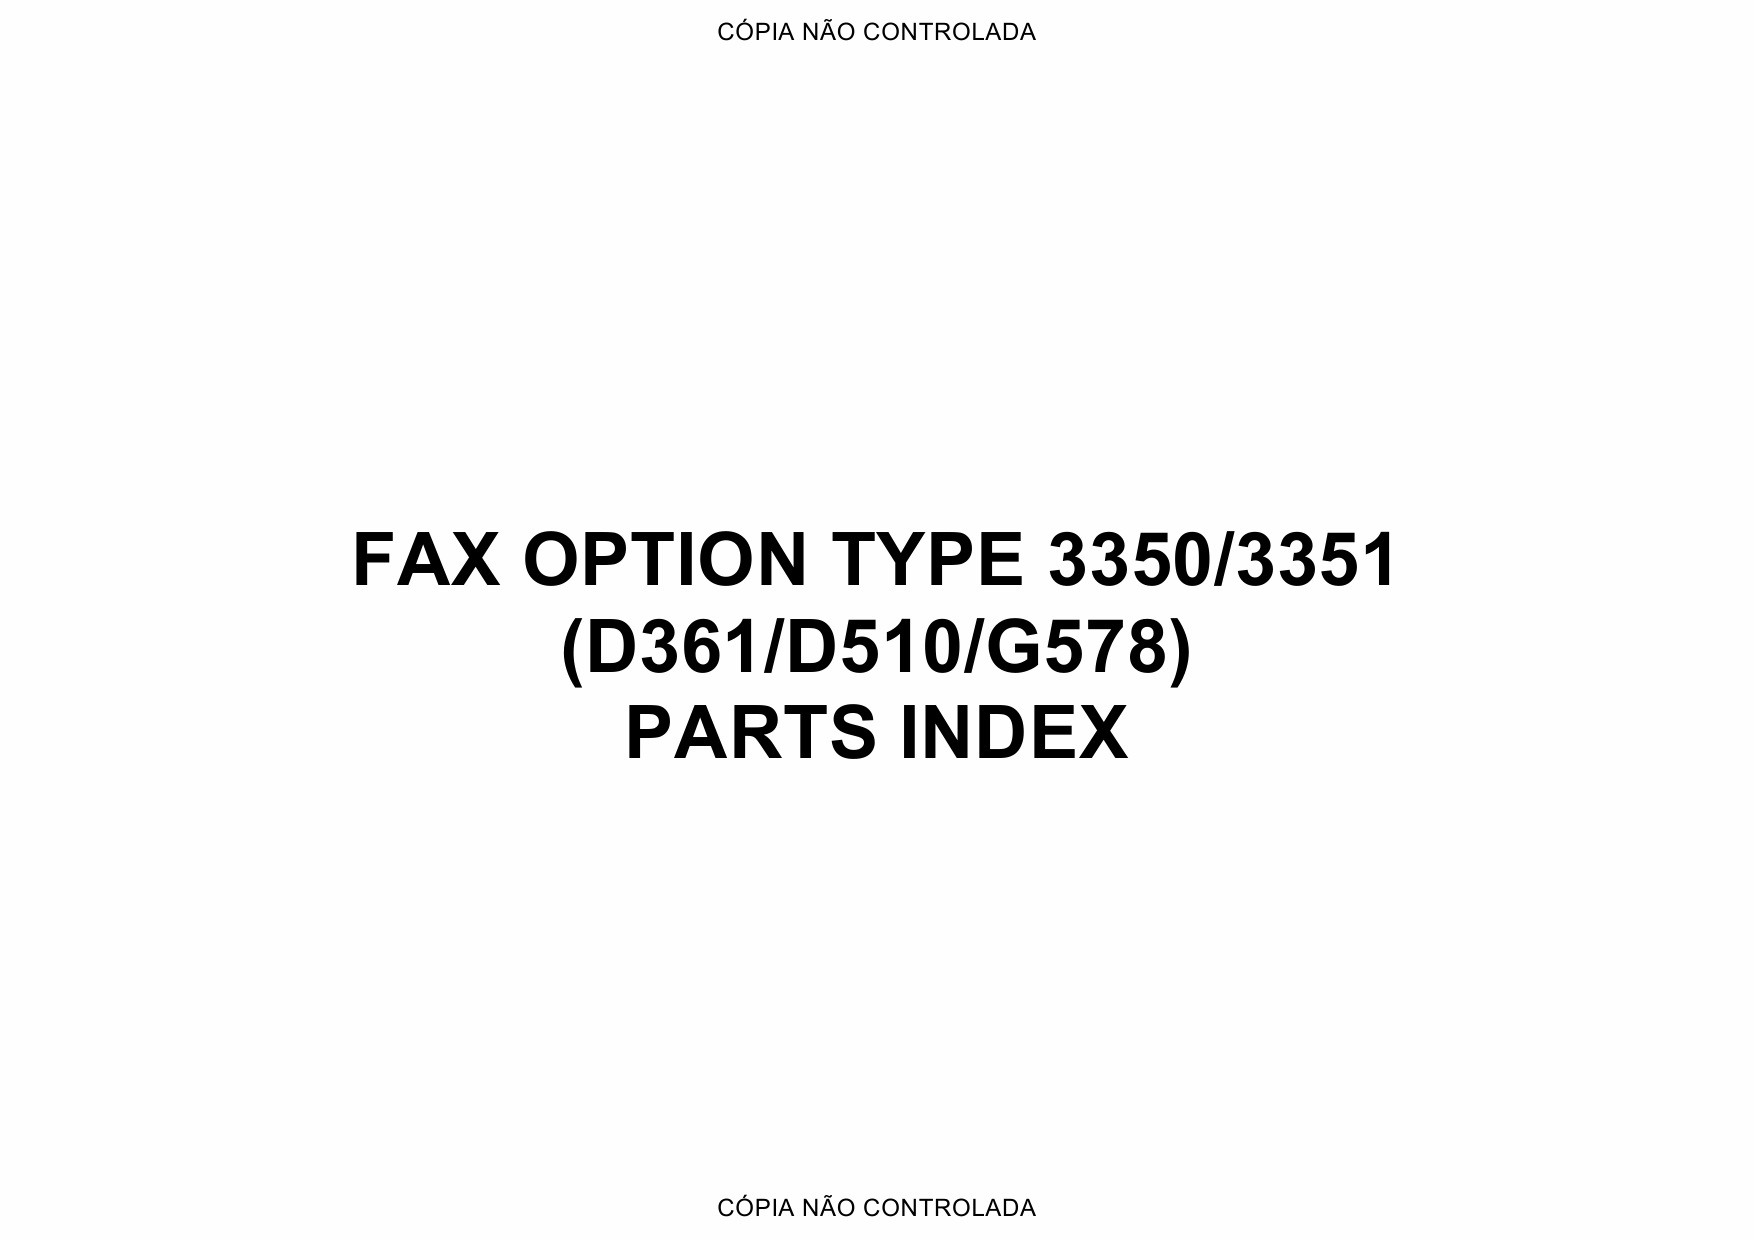 RICOH Options D361 D510 G578 FAX-OPTION-TYPE-3350-3351 Parts Catalog PDF download-5